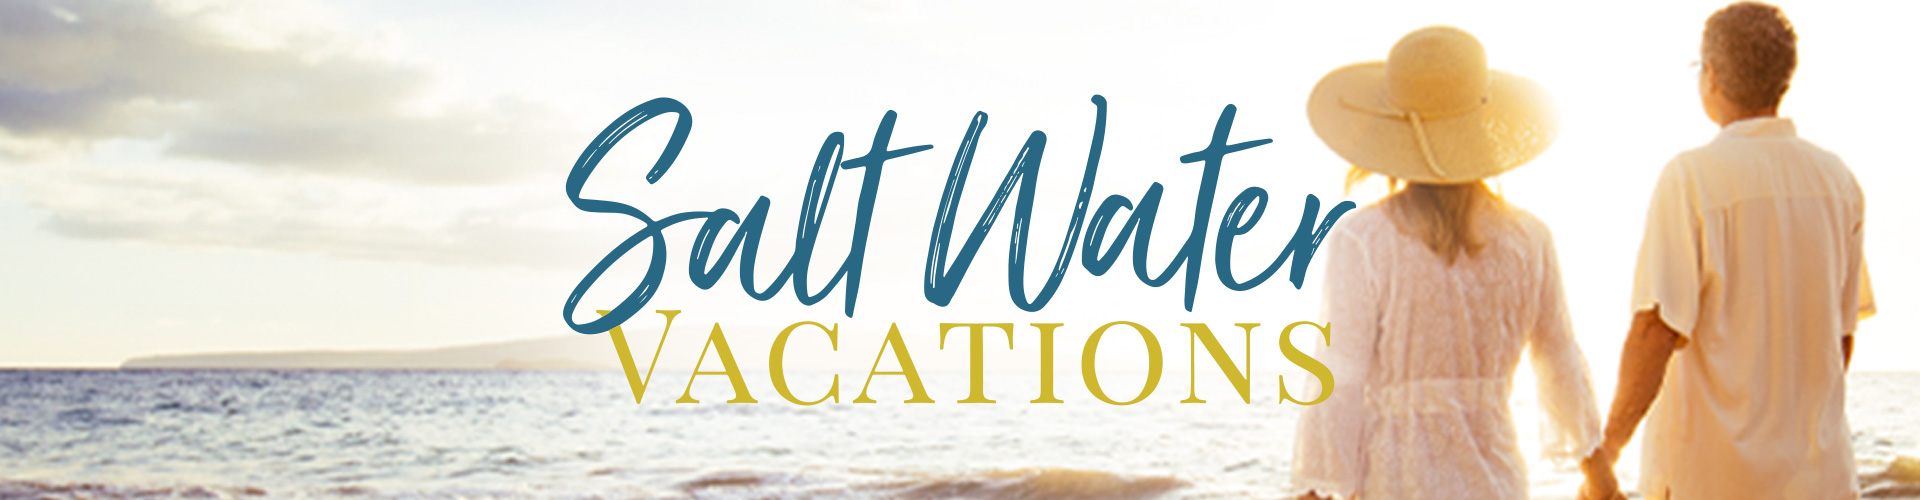 Salt Water Vacations Destin Banner